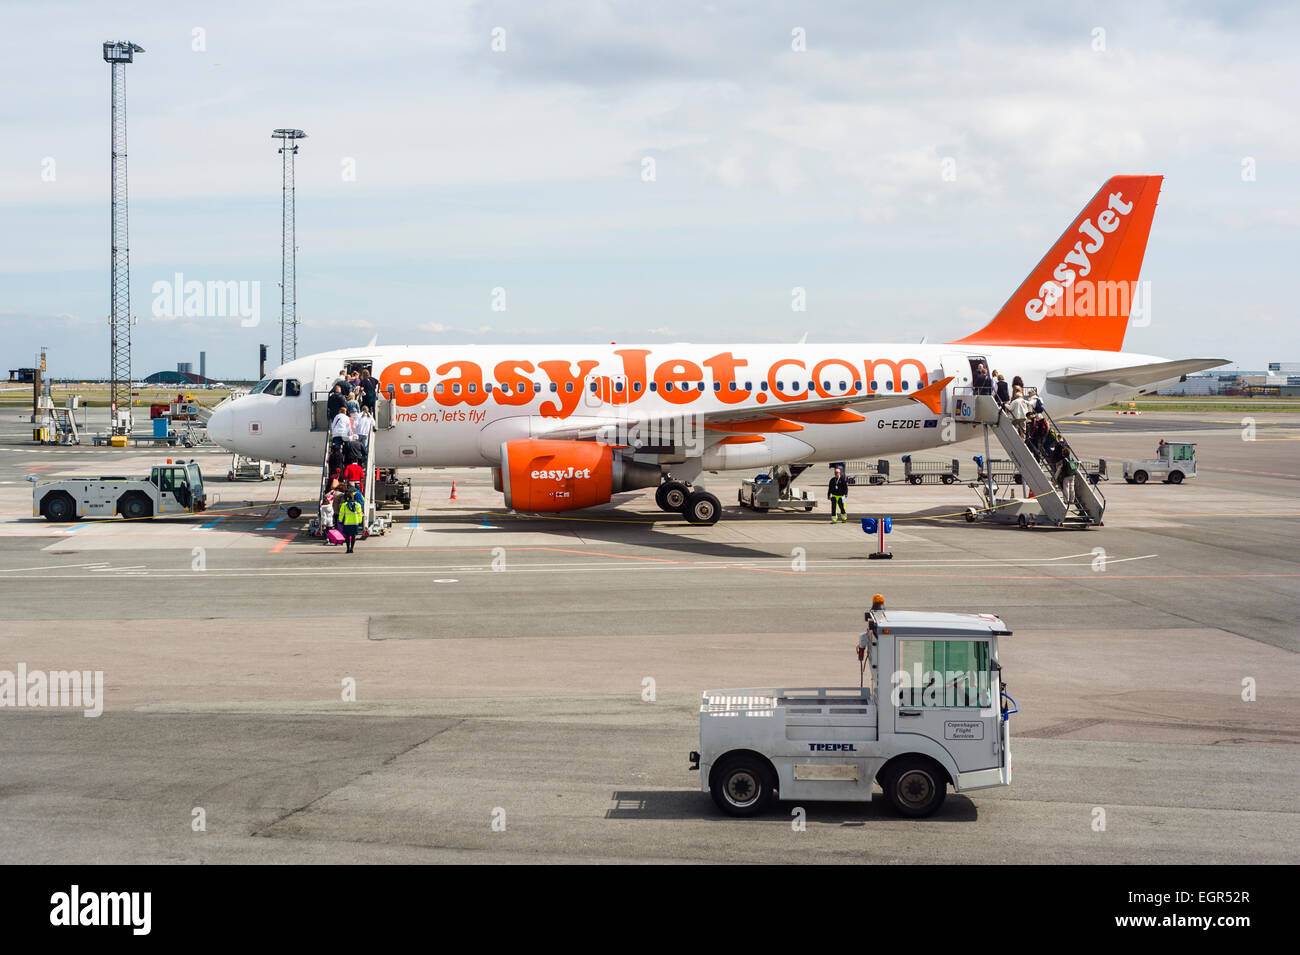 Les derniers passagers bordant un avion easyJet à l'aéroport de Copenhague, avec le personnel au sol de la préparation pour le décollage. Banque D'Images